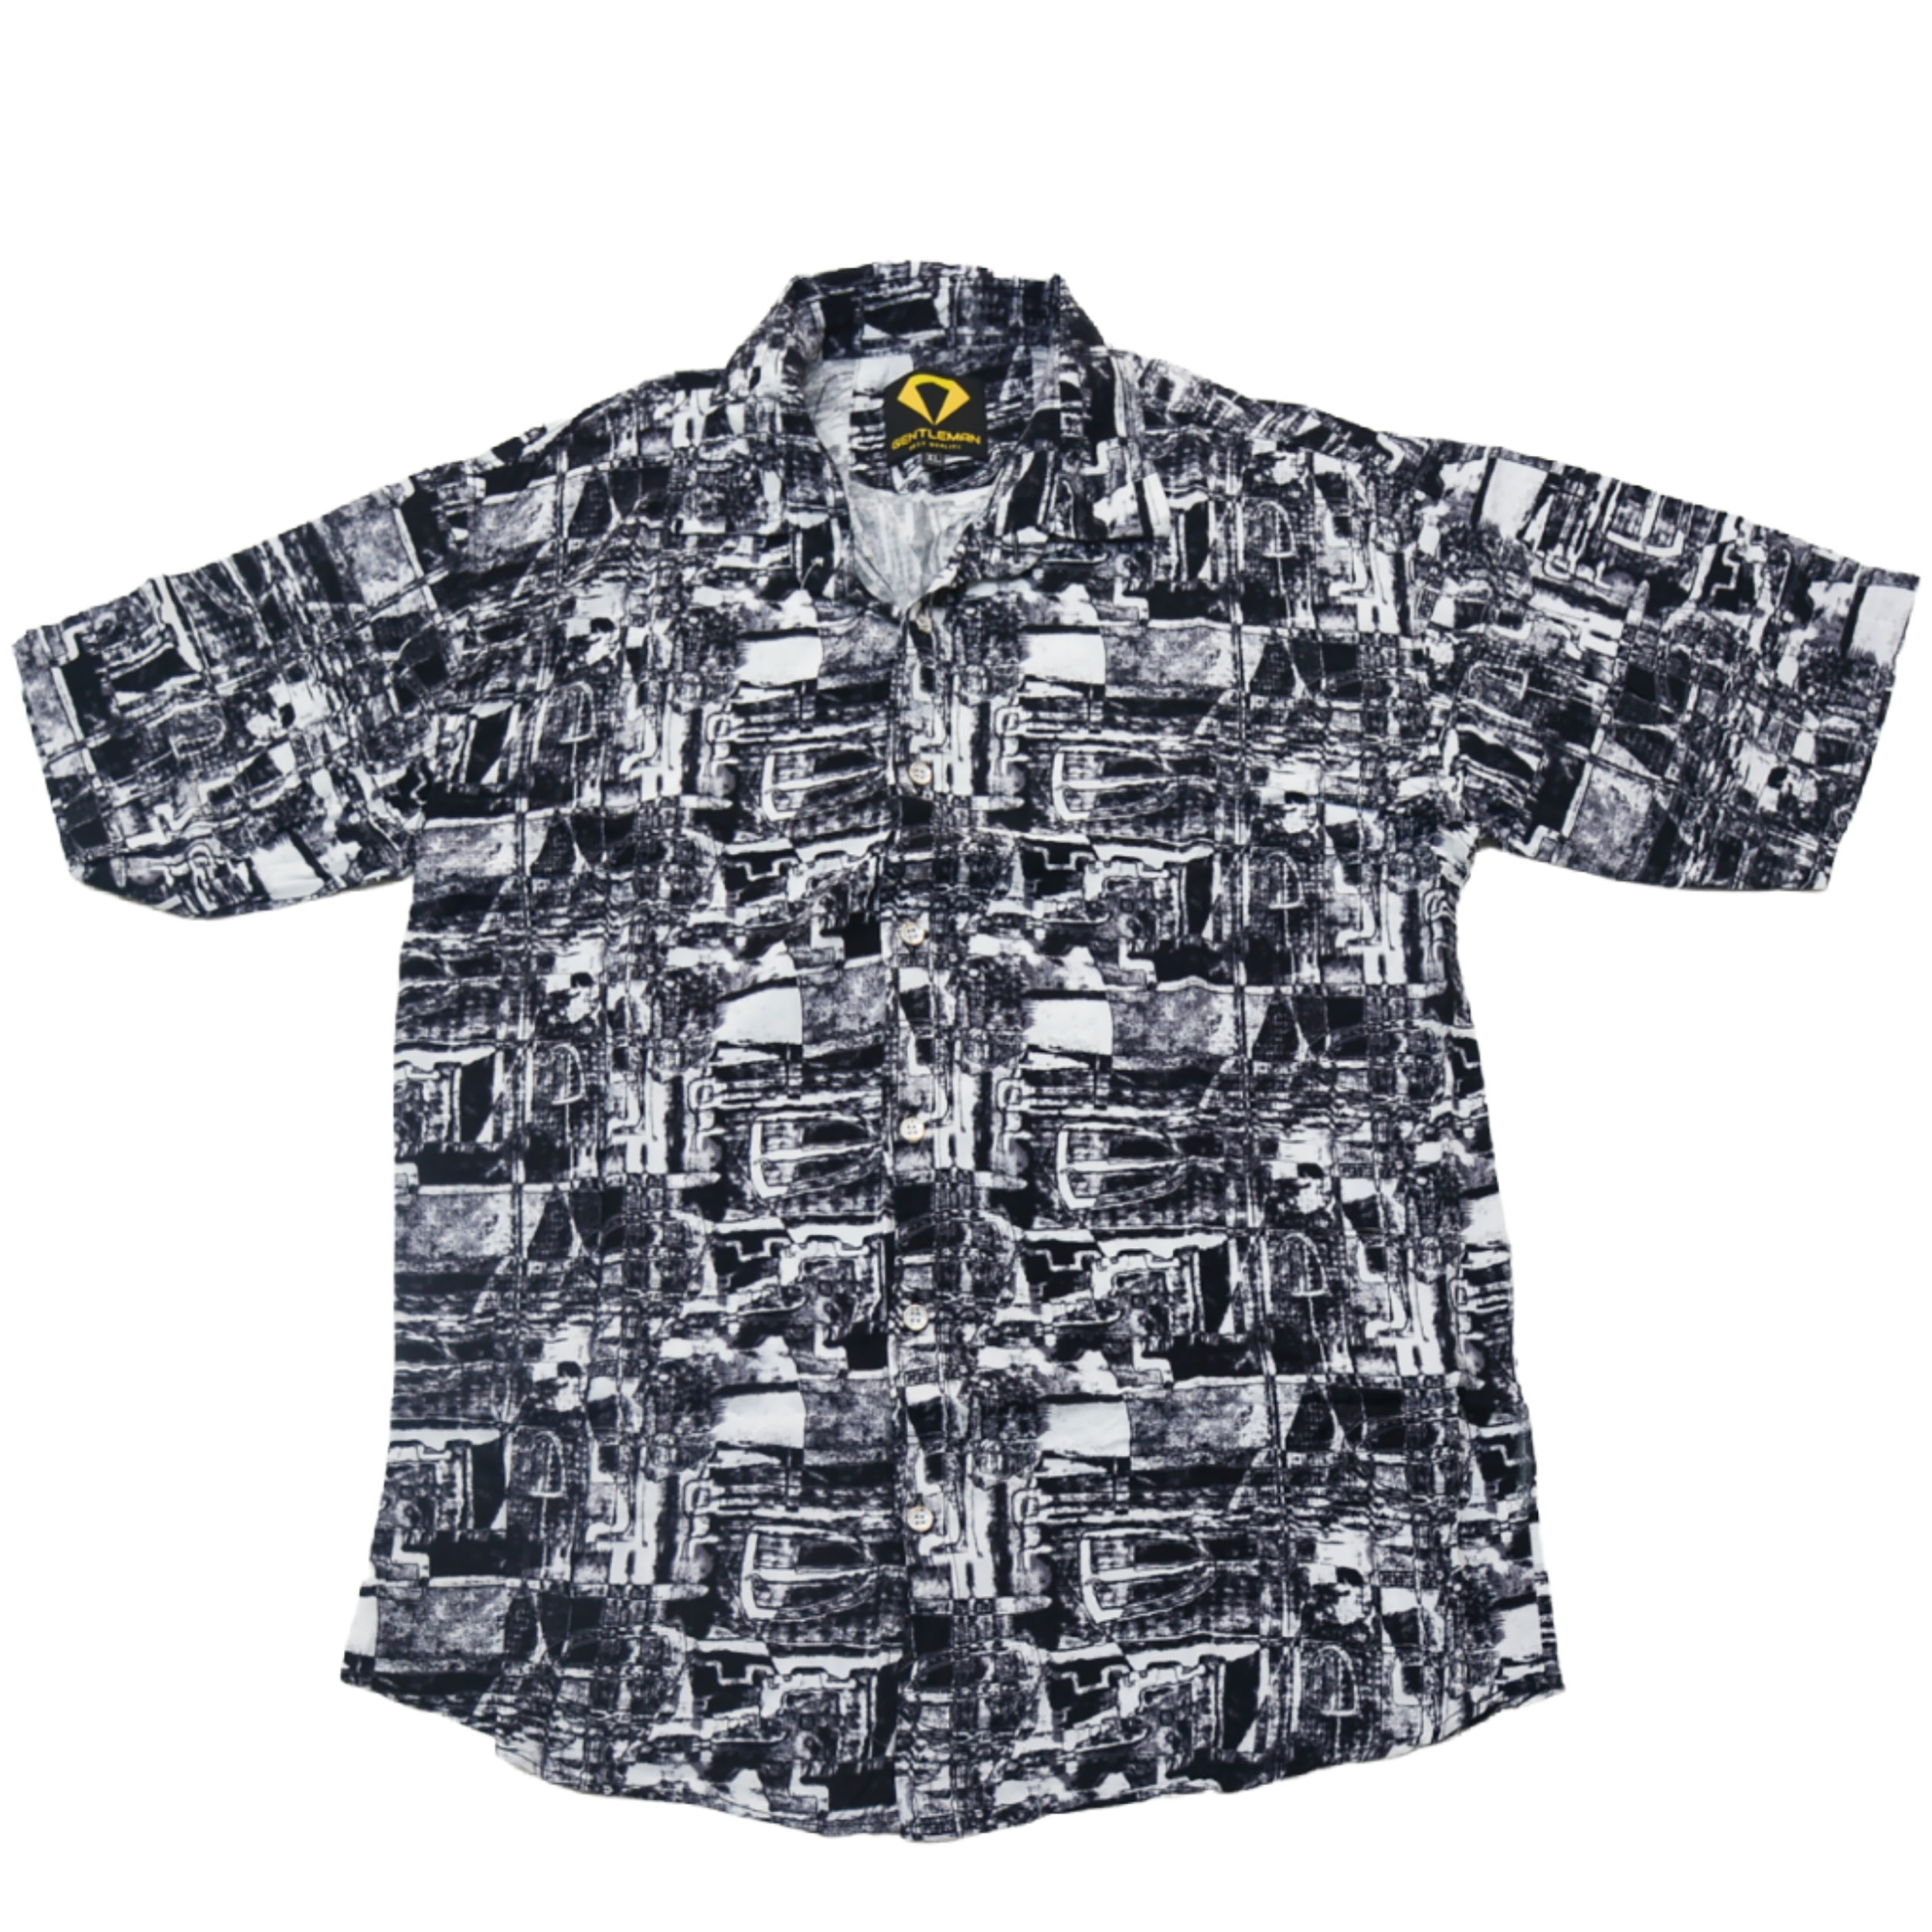 نکته خرید - قیمت روز پیراهن آستین کوتاه مردانه مدل هاوایی جنتلمن 05 خرید